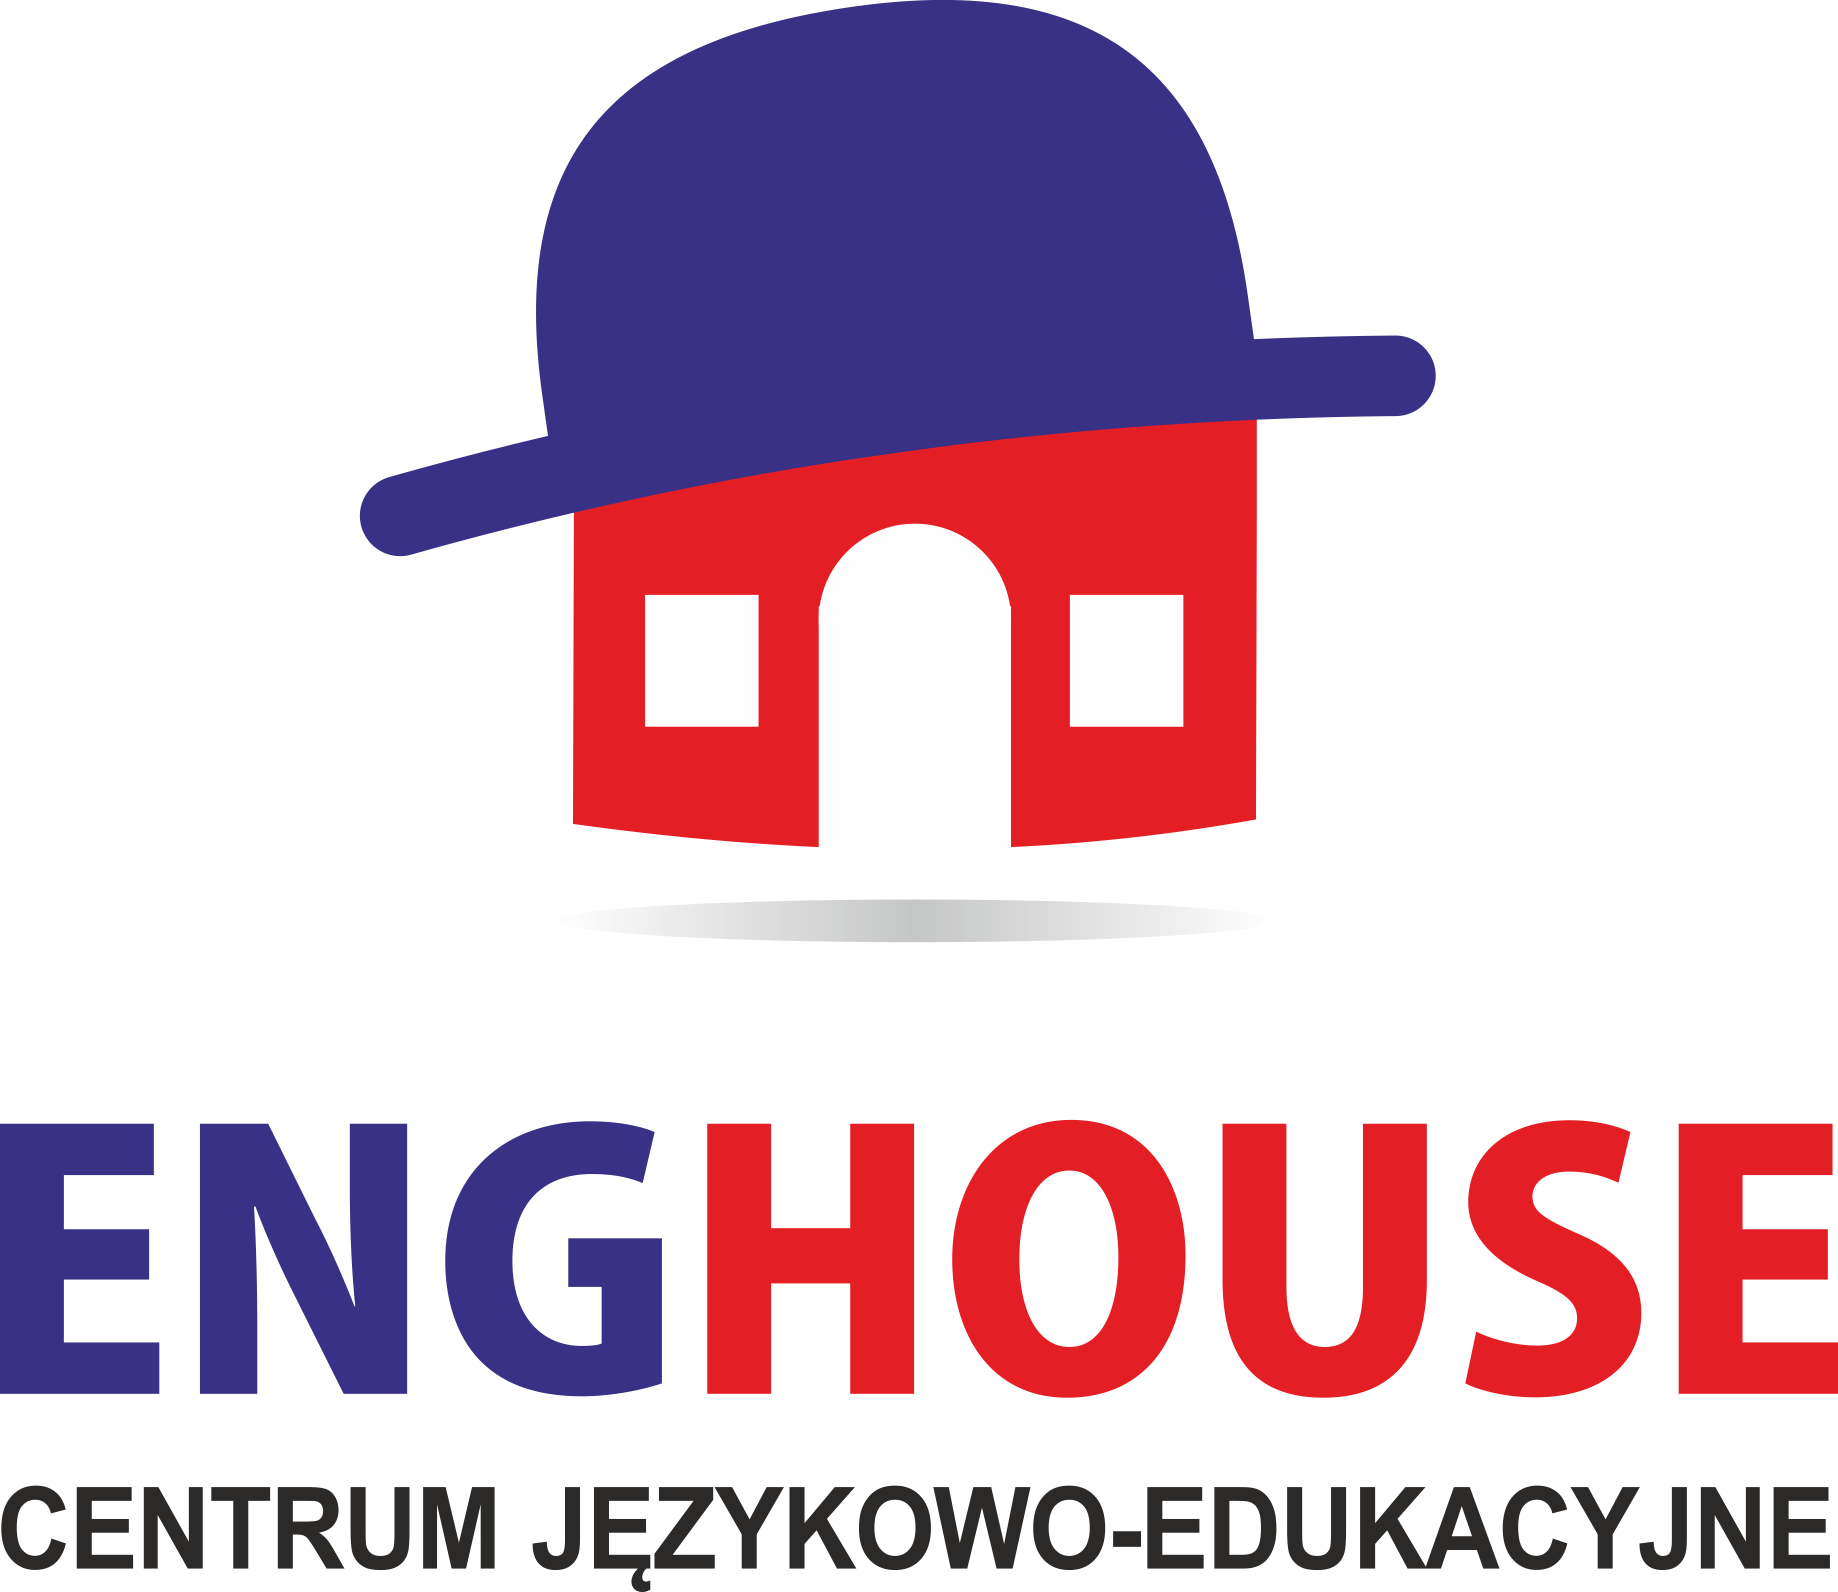 Enghouse Centrum Językowo-Edukacyjne